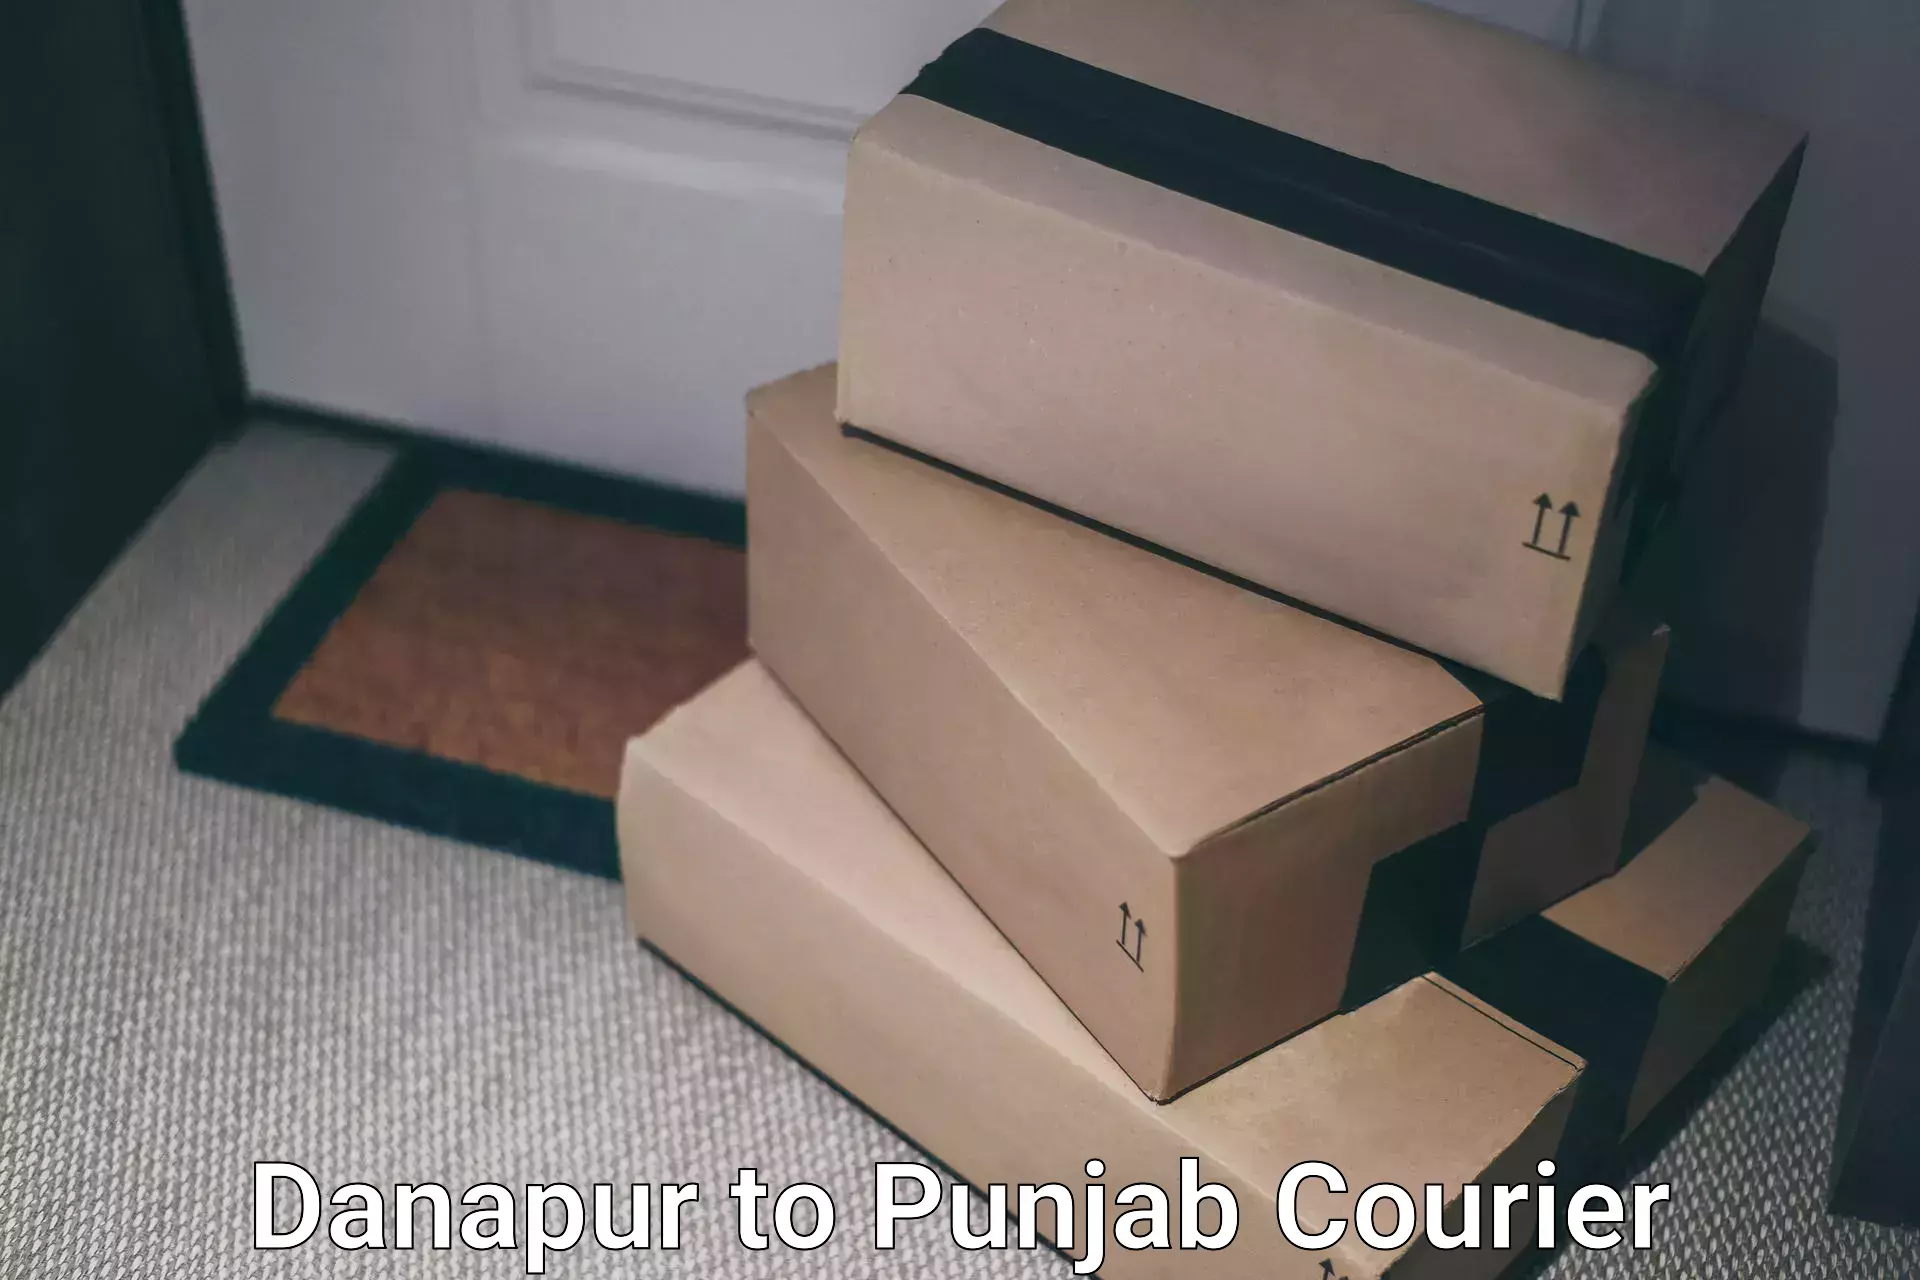 Efficient parcel delivery Danapur to Batala